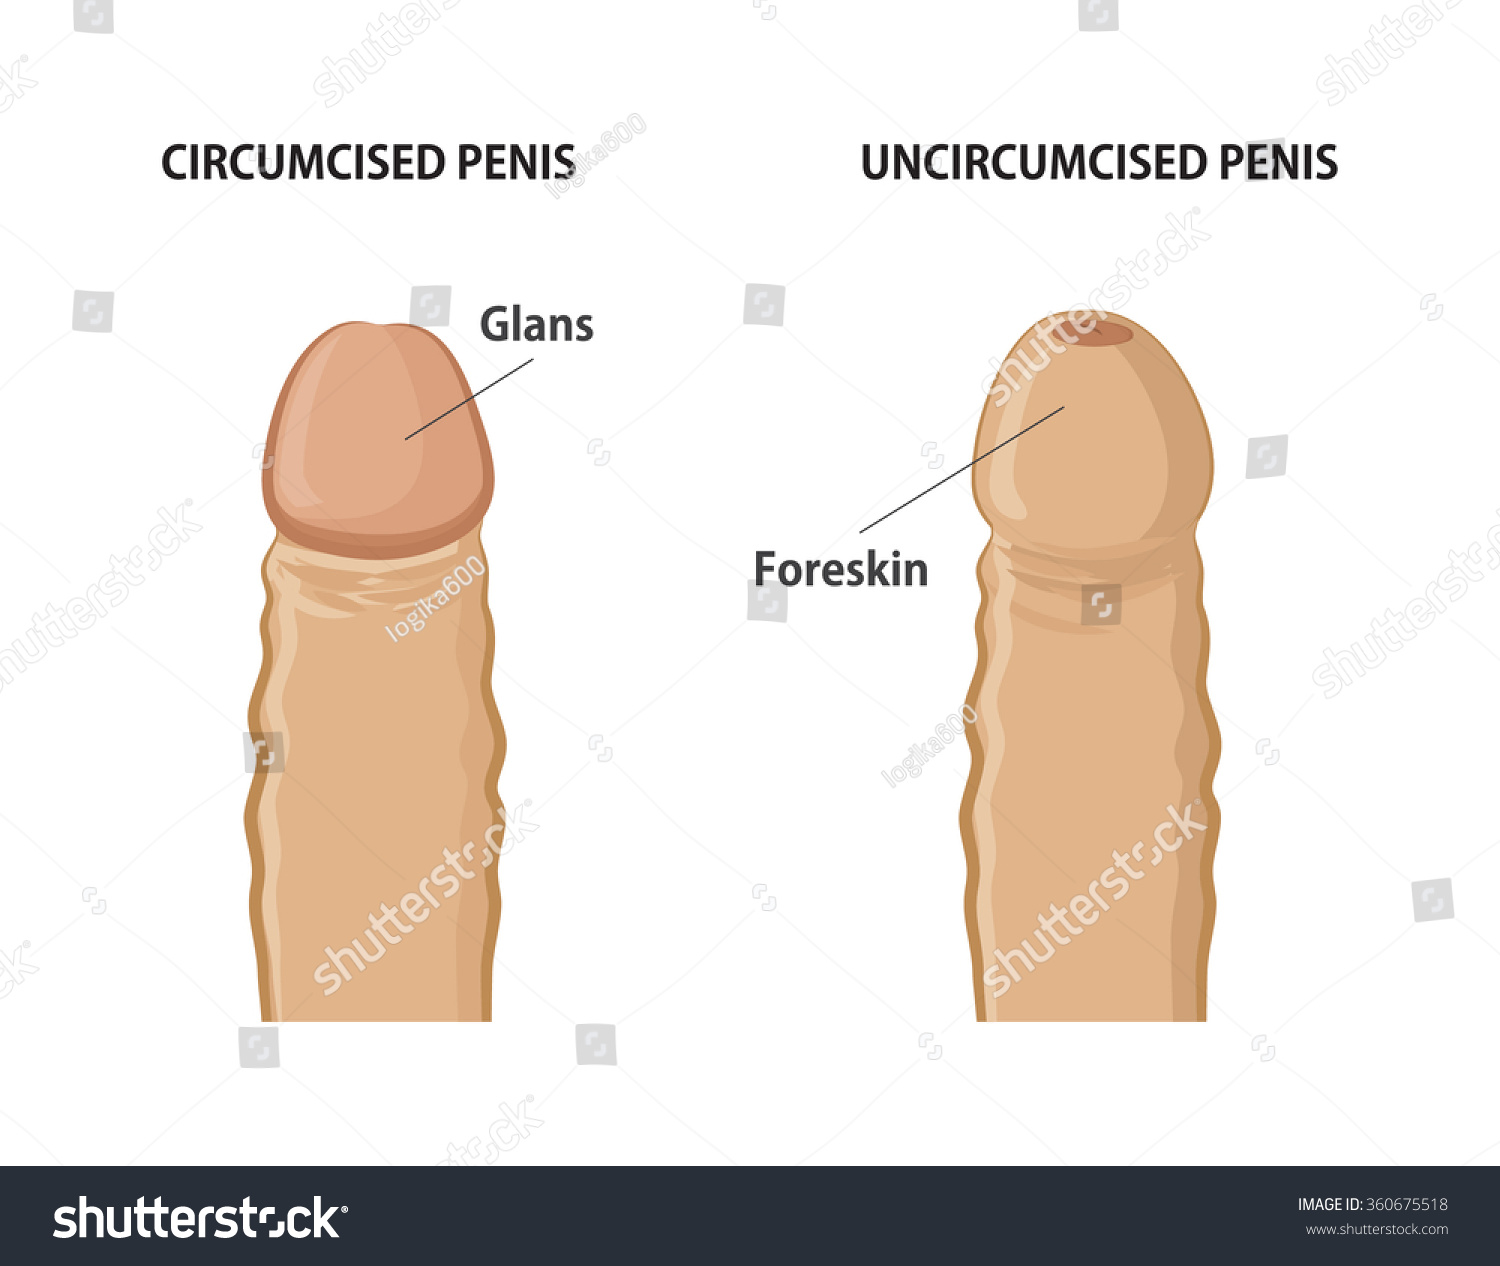 Circumcised Or Uncircumcised Penis 49